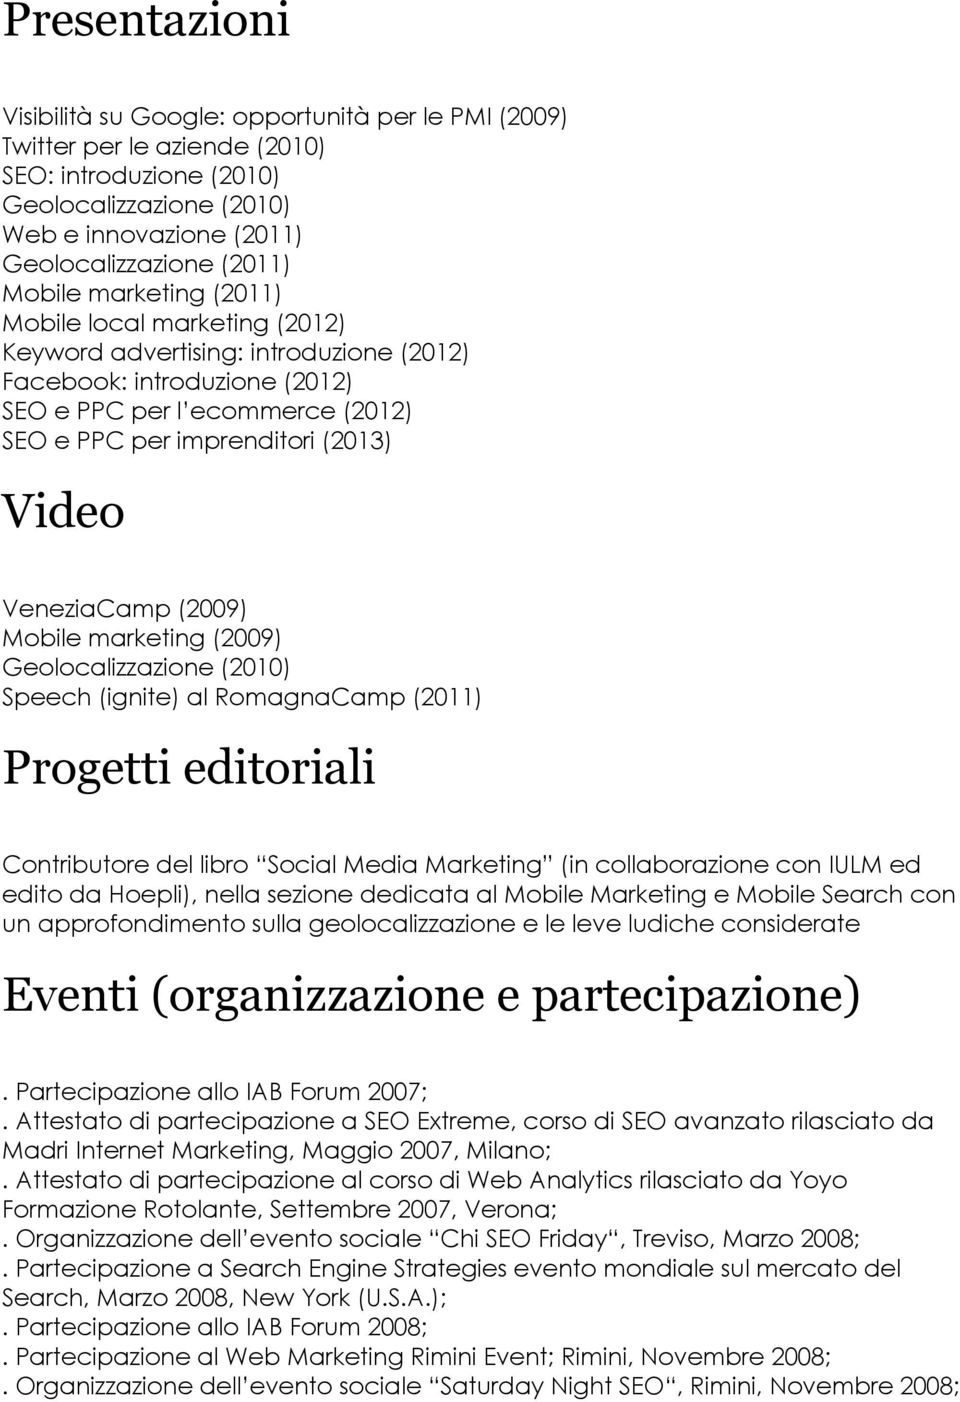 VeneziaCamp (2009) Mobile marketing (2009) Geolocalizzazione (2010) Speech (ignite) al RomagnaCamp (2011) Progetti editoriali Contributore del libro Social Media Marketing (in collaborazione con IULM